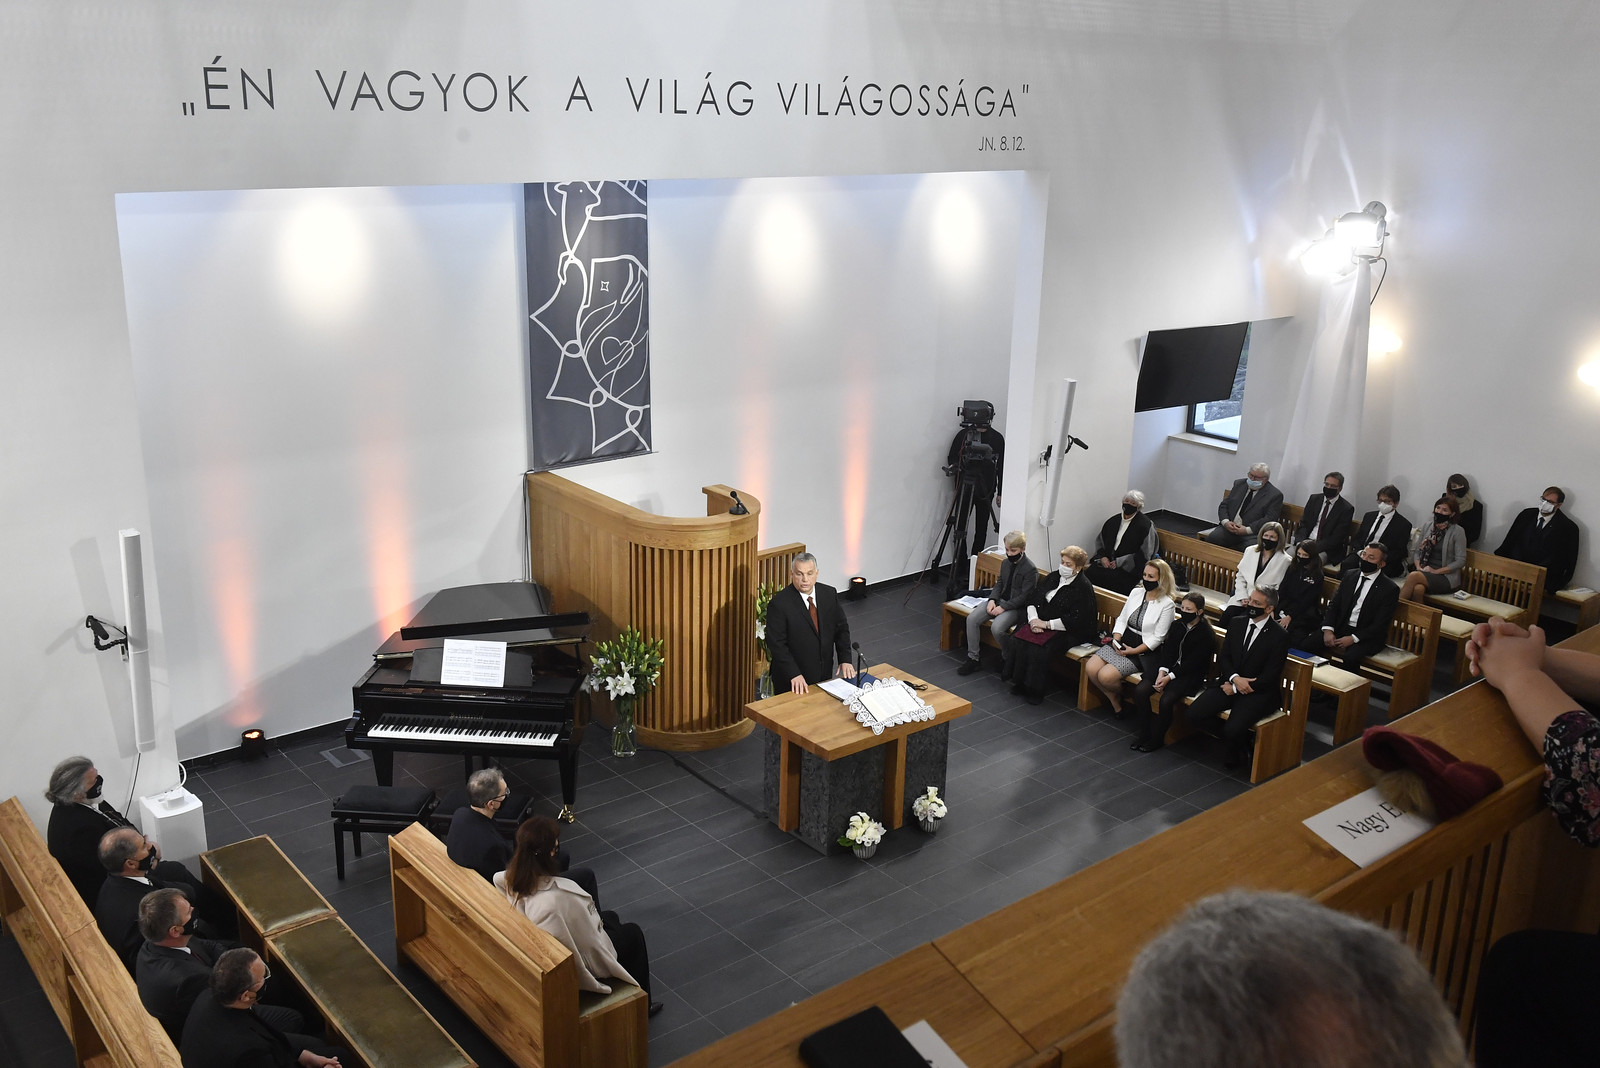 Templomromboló időket élünk Orbán Viktor szerint